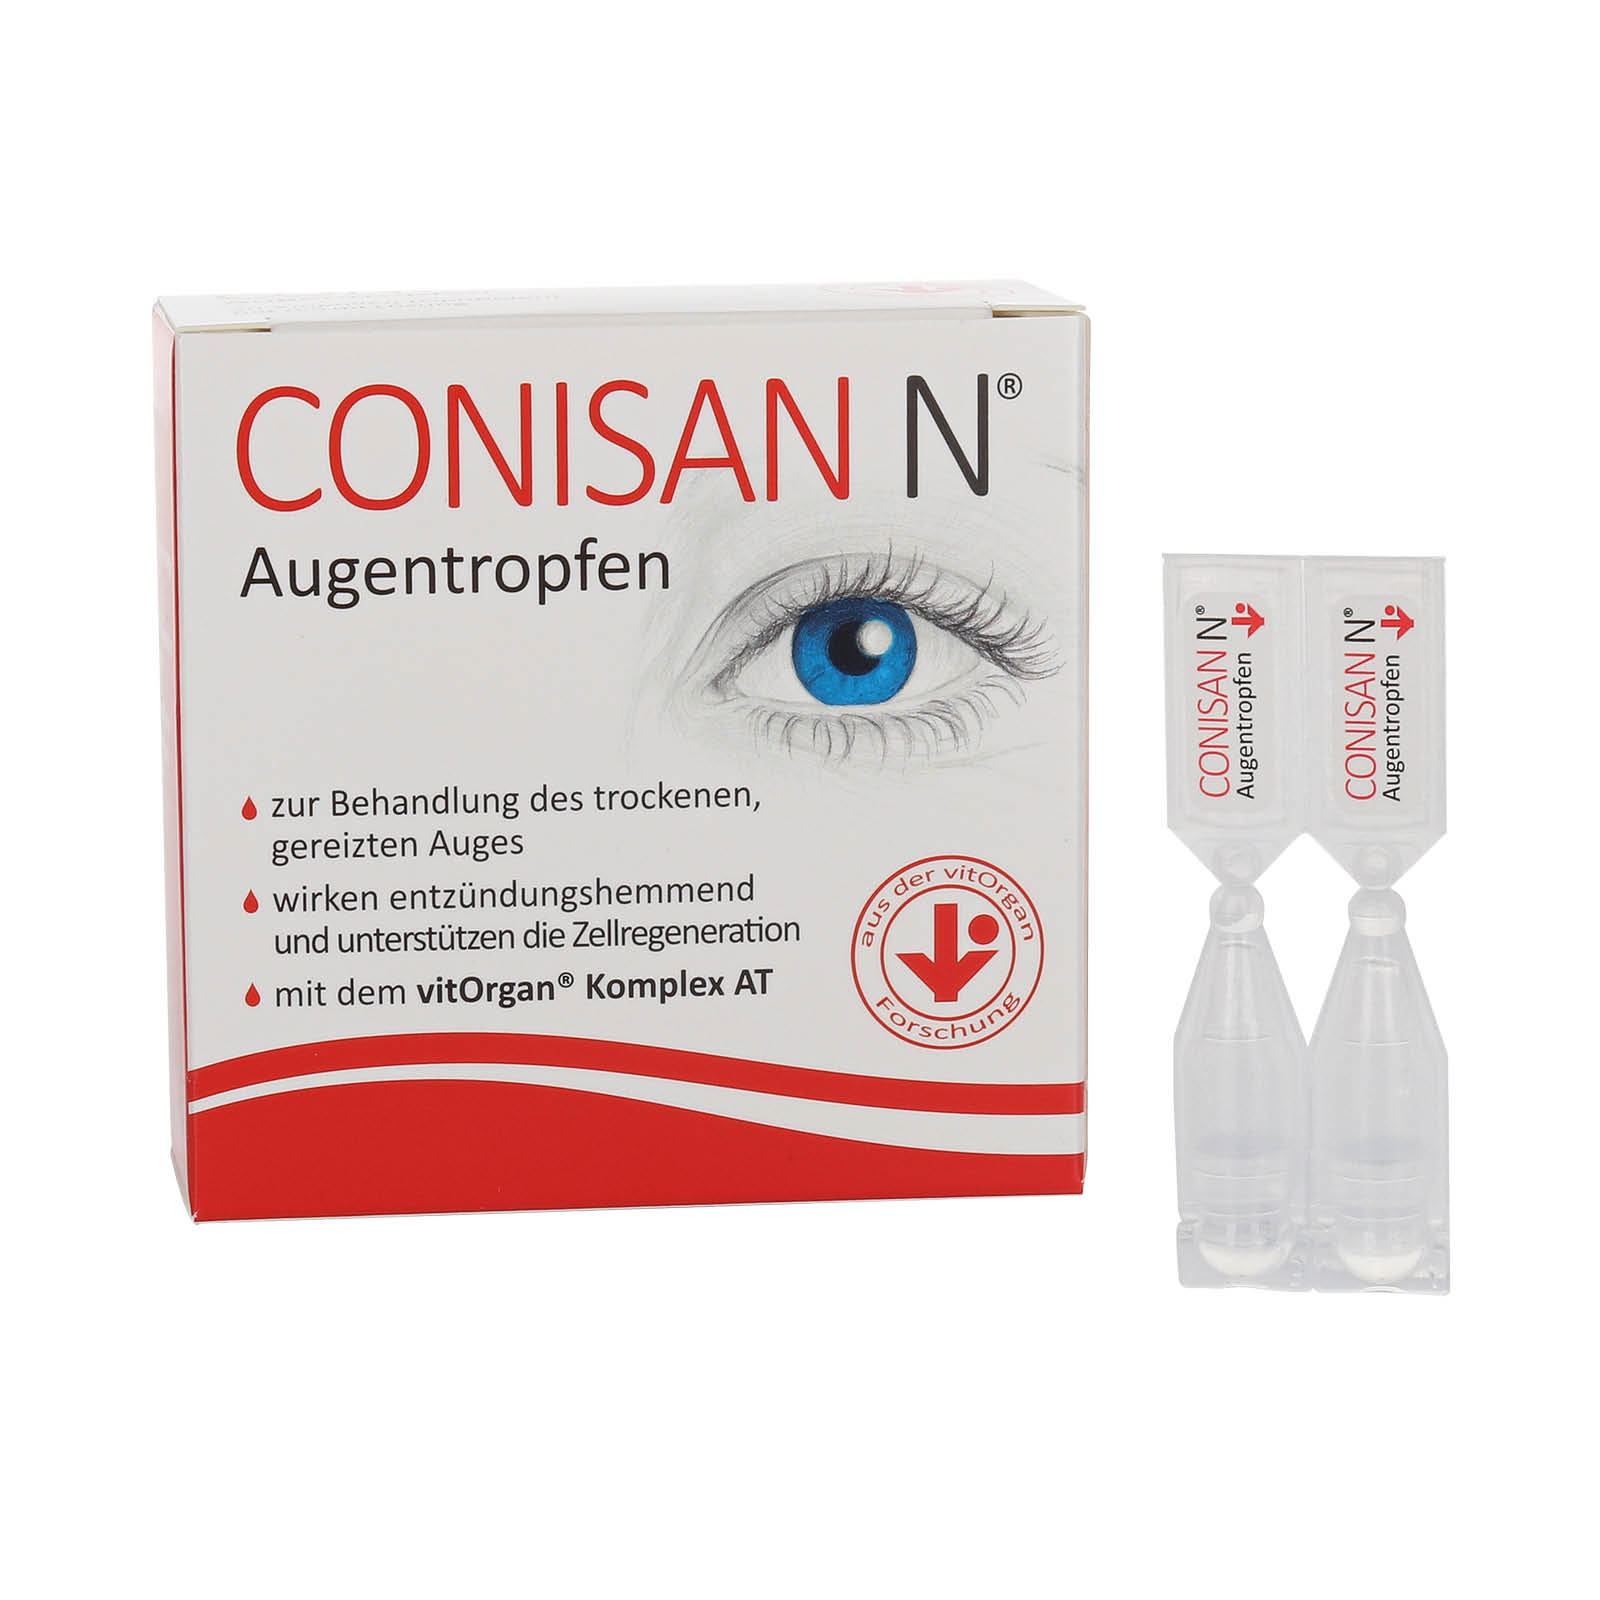 Conisan N® Augentropfen